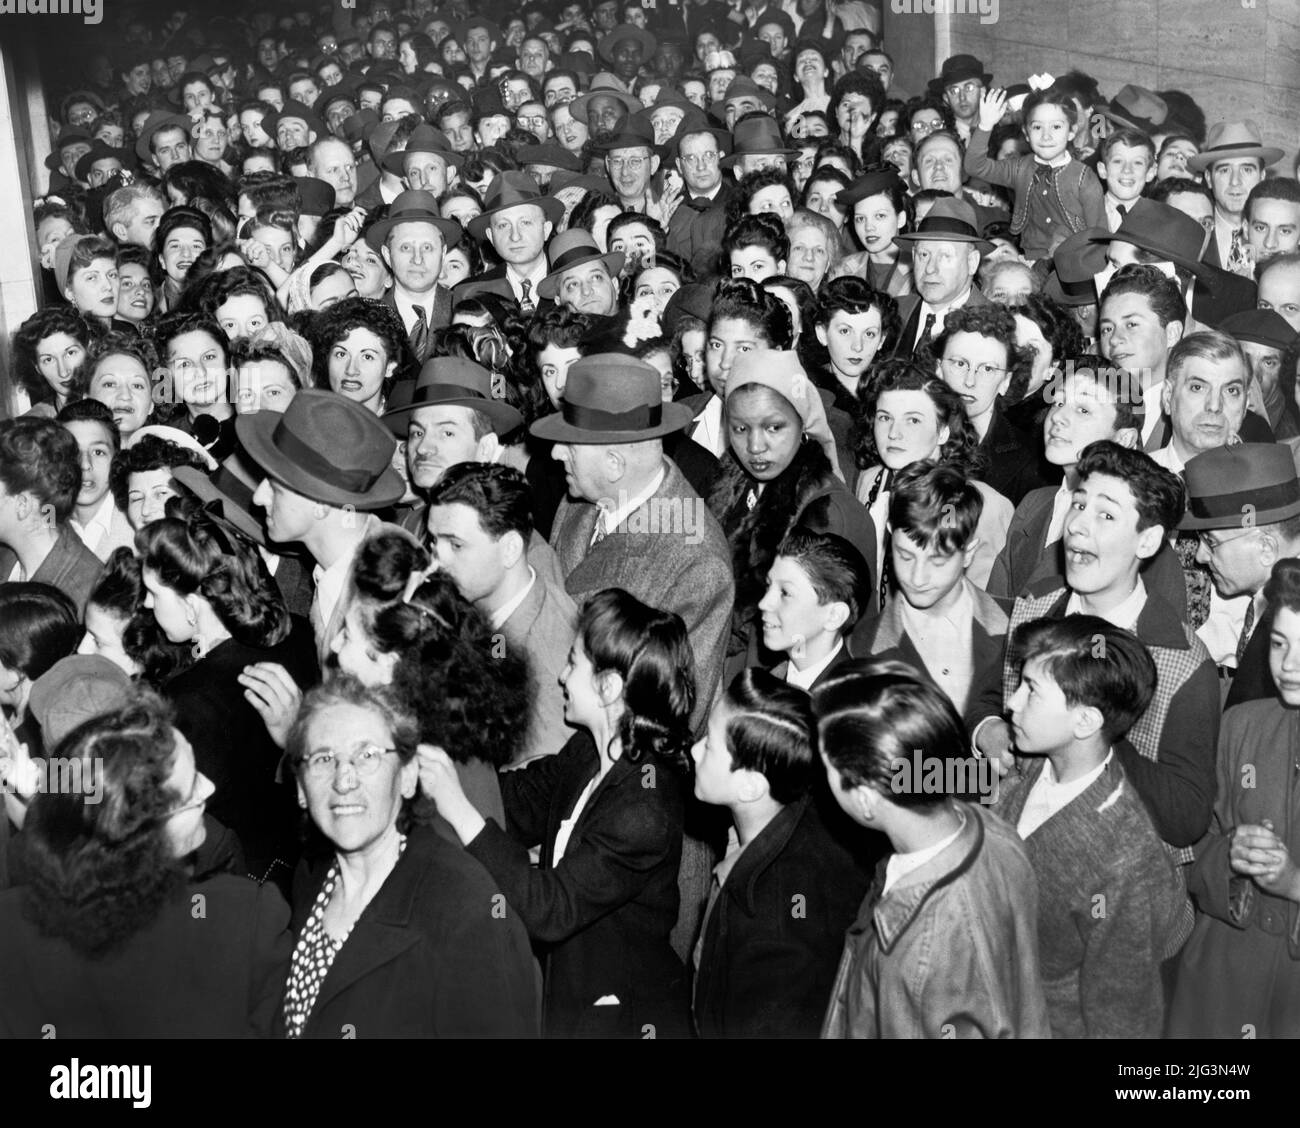 Menschenmenge, die darauf wartet, im Gebäude des Gesundheitsministeriums, New York City, New York, USA, Al Ravenna, New York World-Telegram and the Sun Newspaper Photograph Collection, 1947 Stockfoto